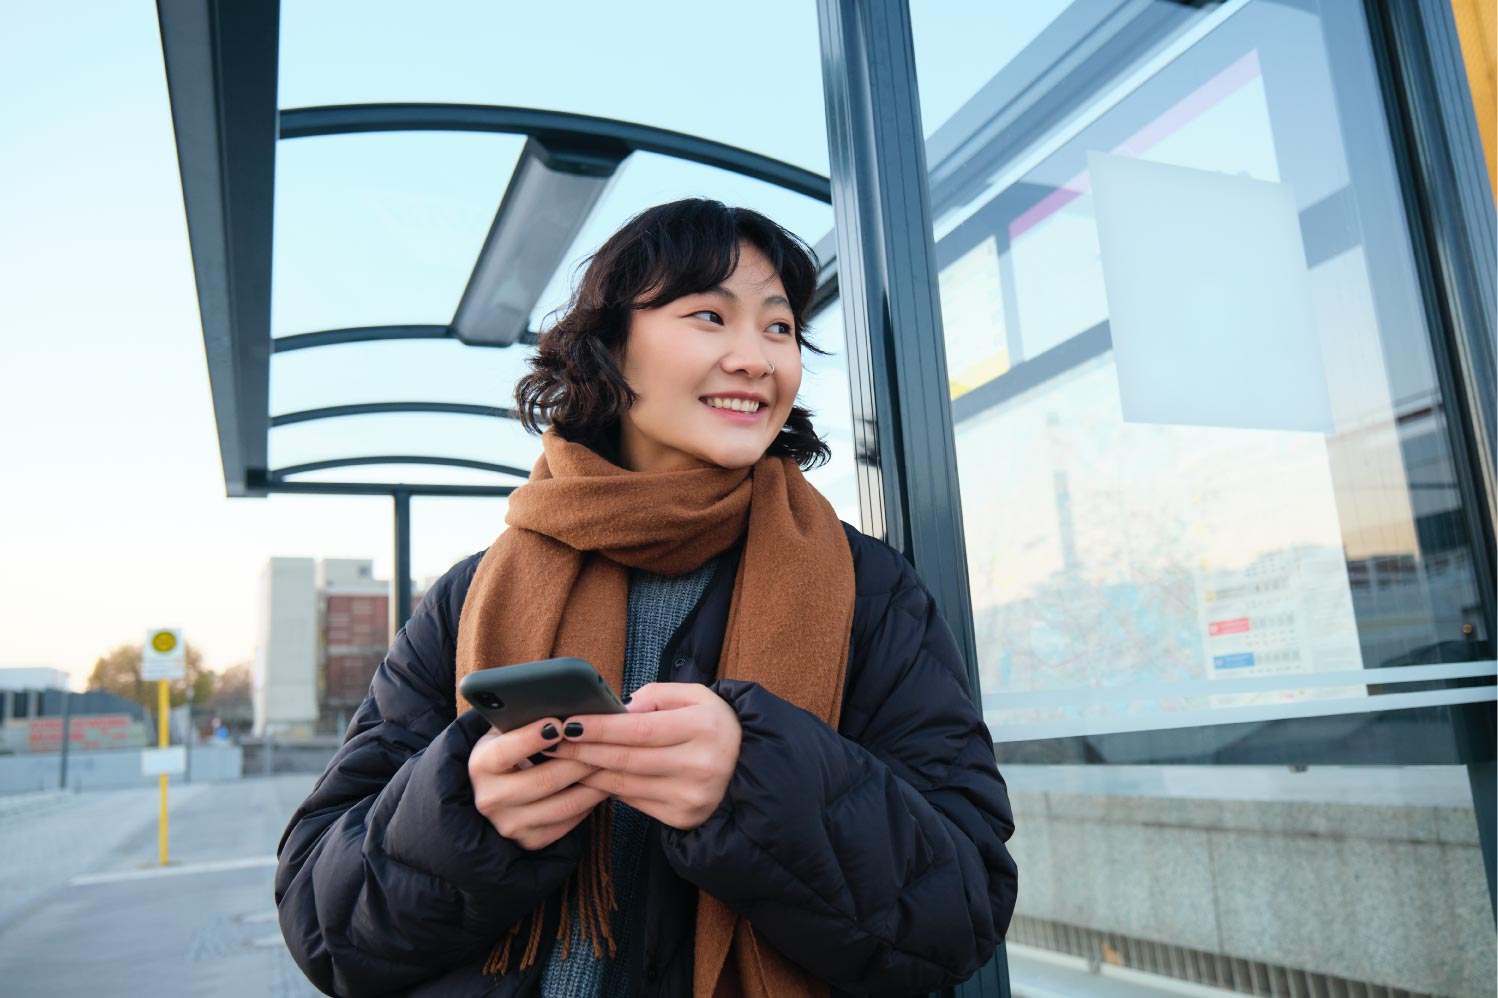 Eine junge Frau steht mit einem Handy in der Hand an einer Haltstelle und lächelt.